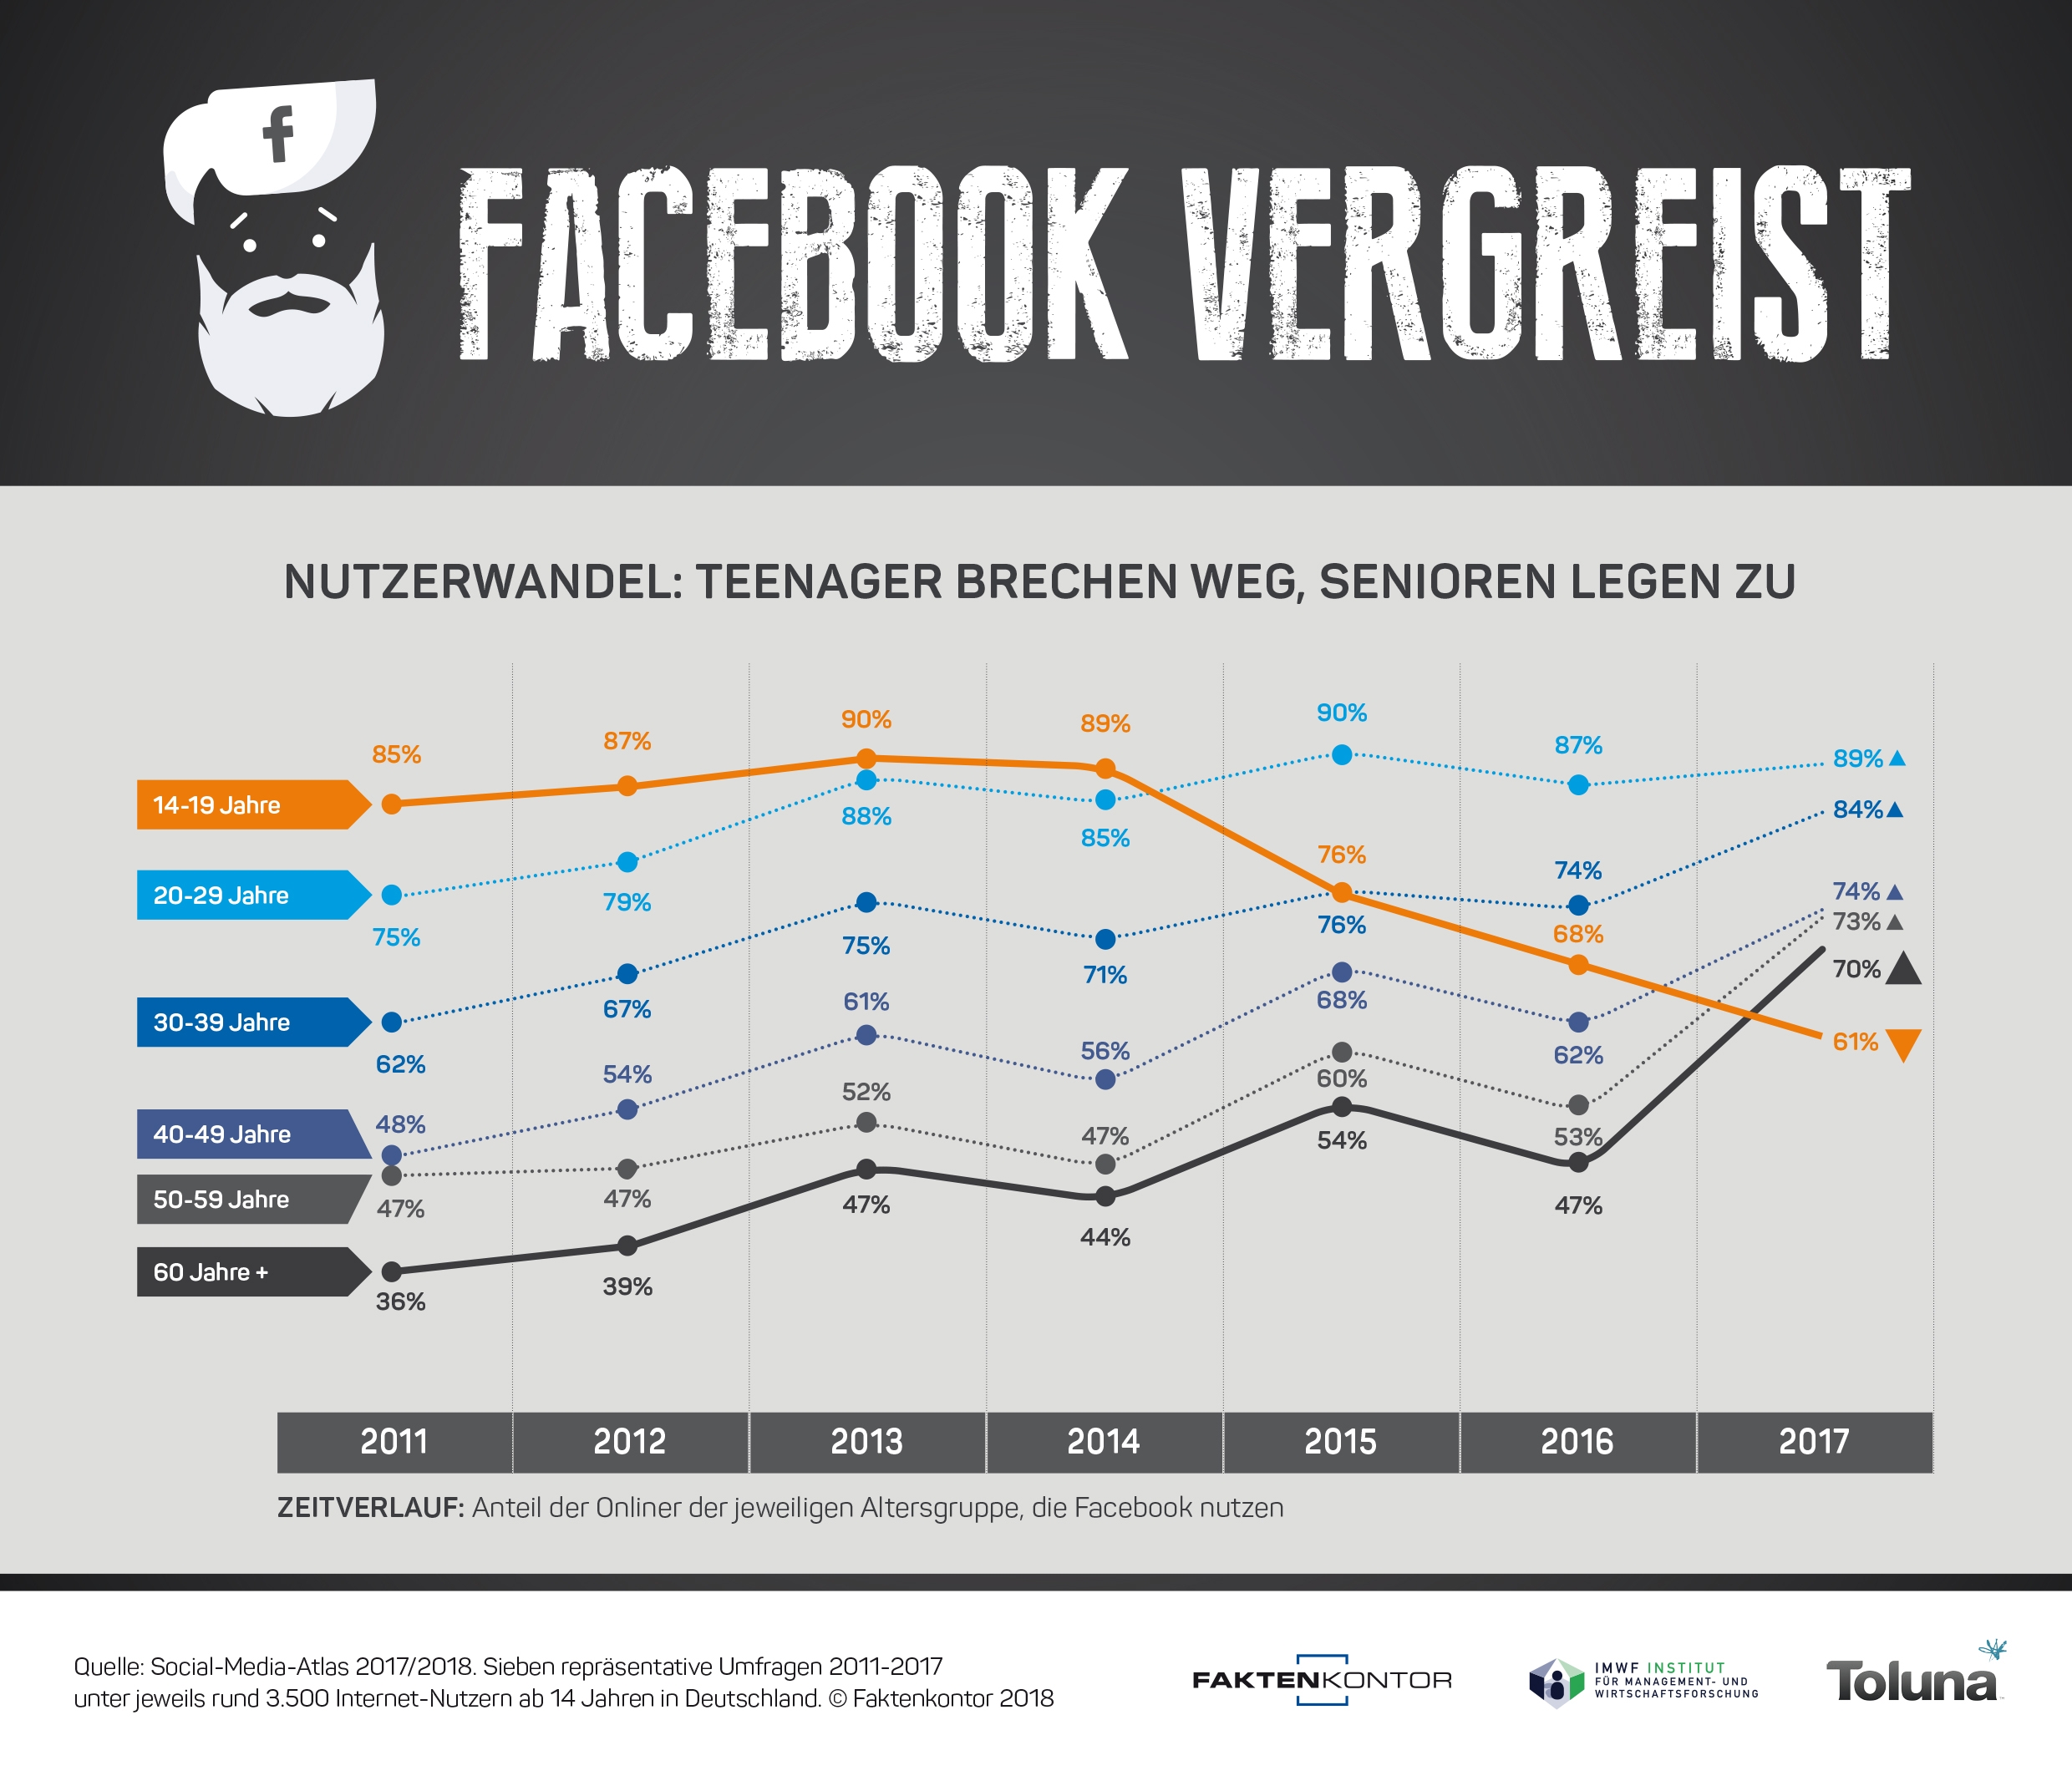 Infografik-Facebook-Nutzerwandel-Altersgruppen-2011-2017-Faktenkontor-Social-Media-Atlas-2017-2018-korr.jpg